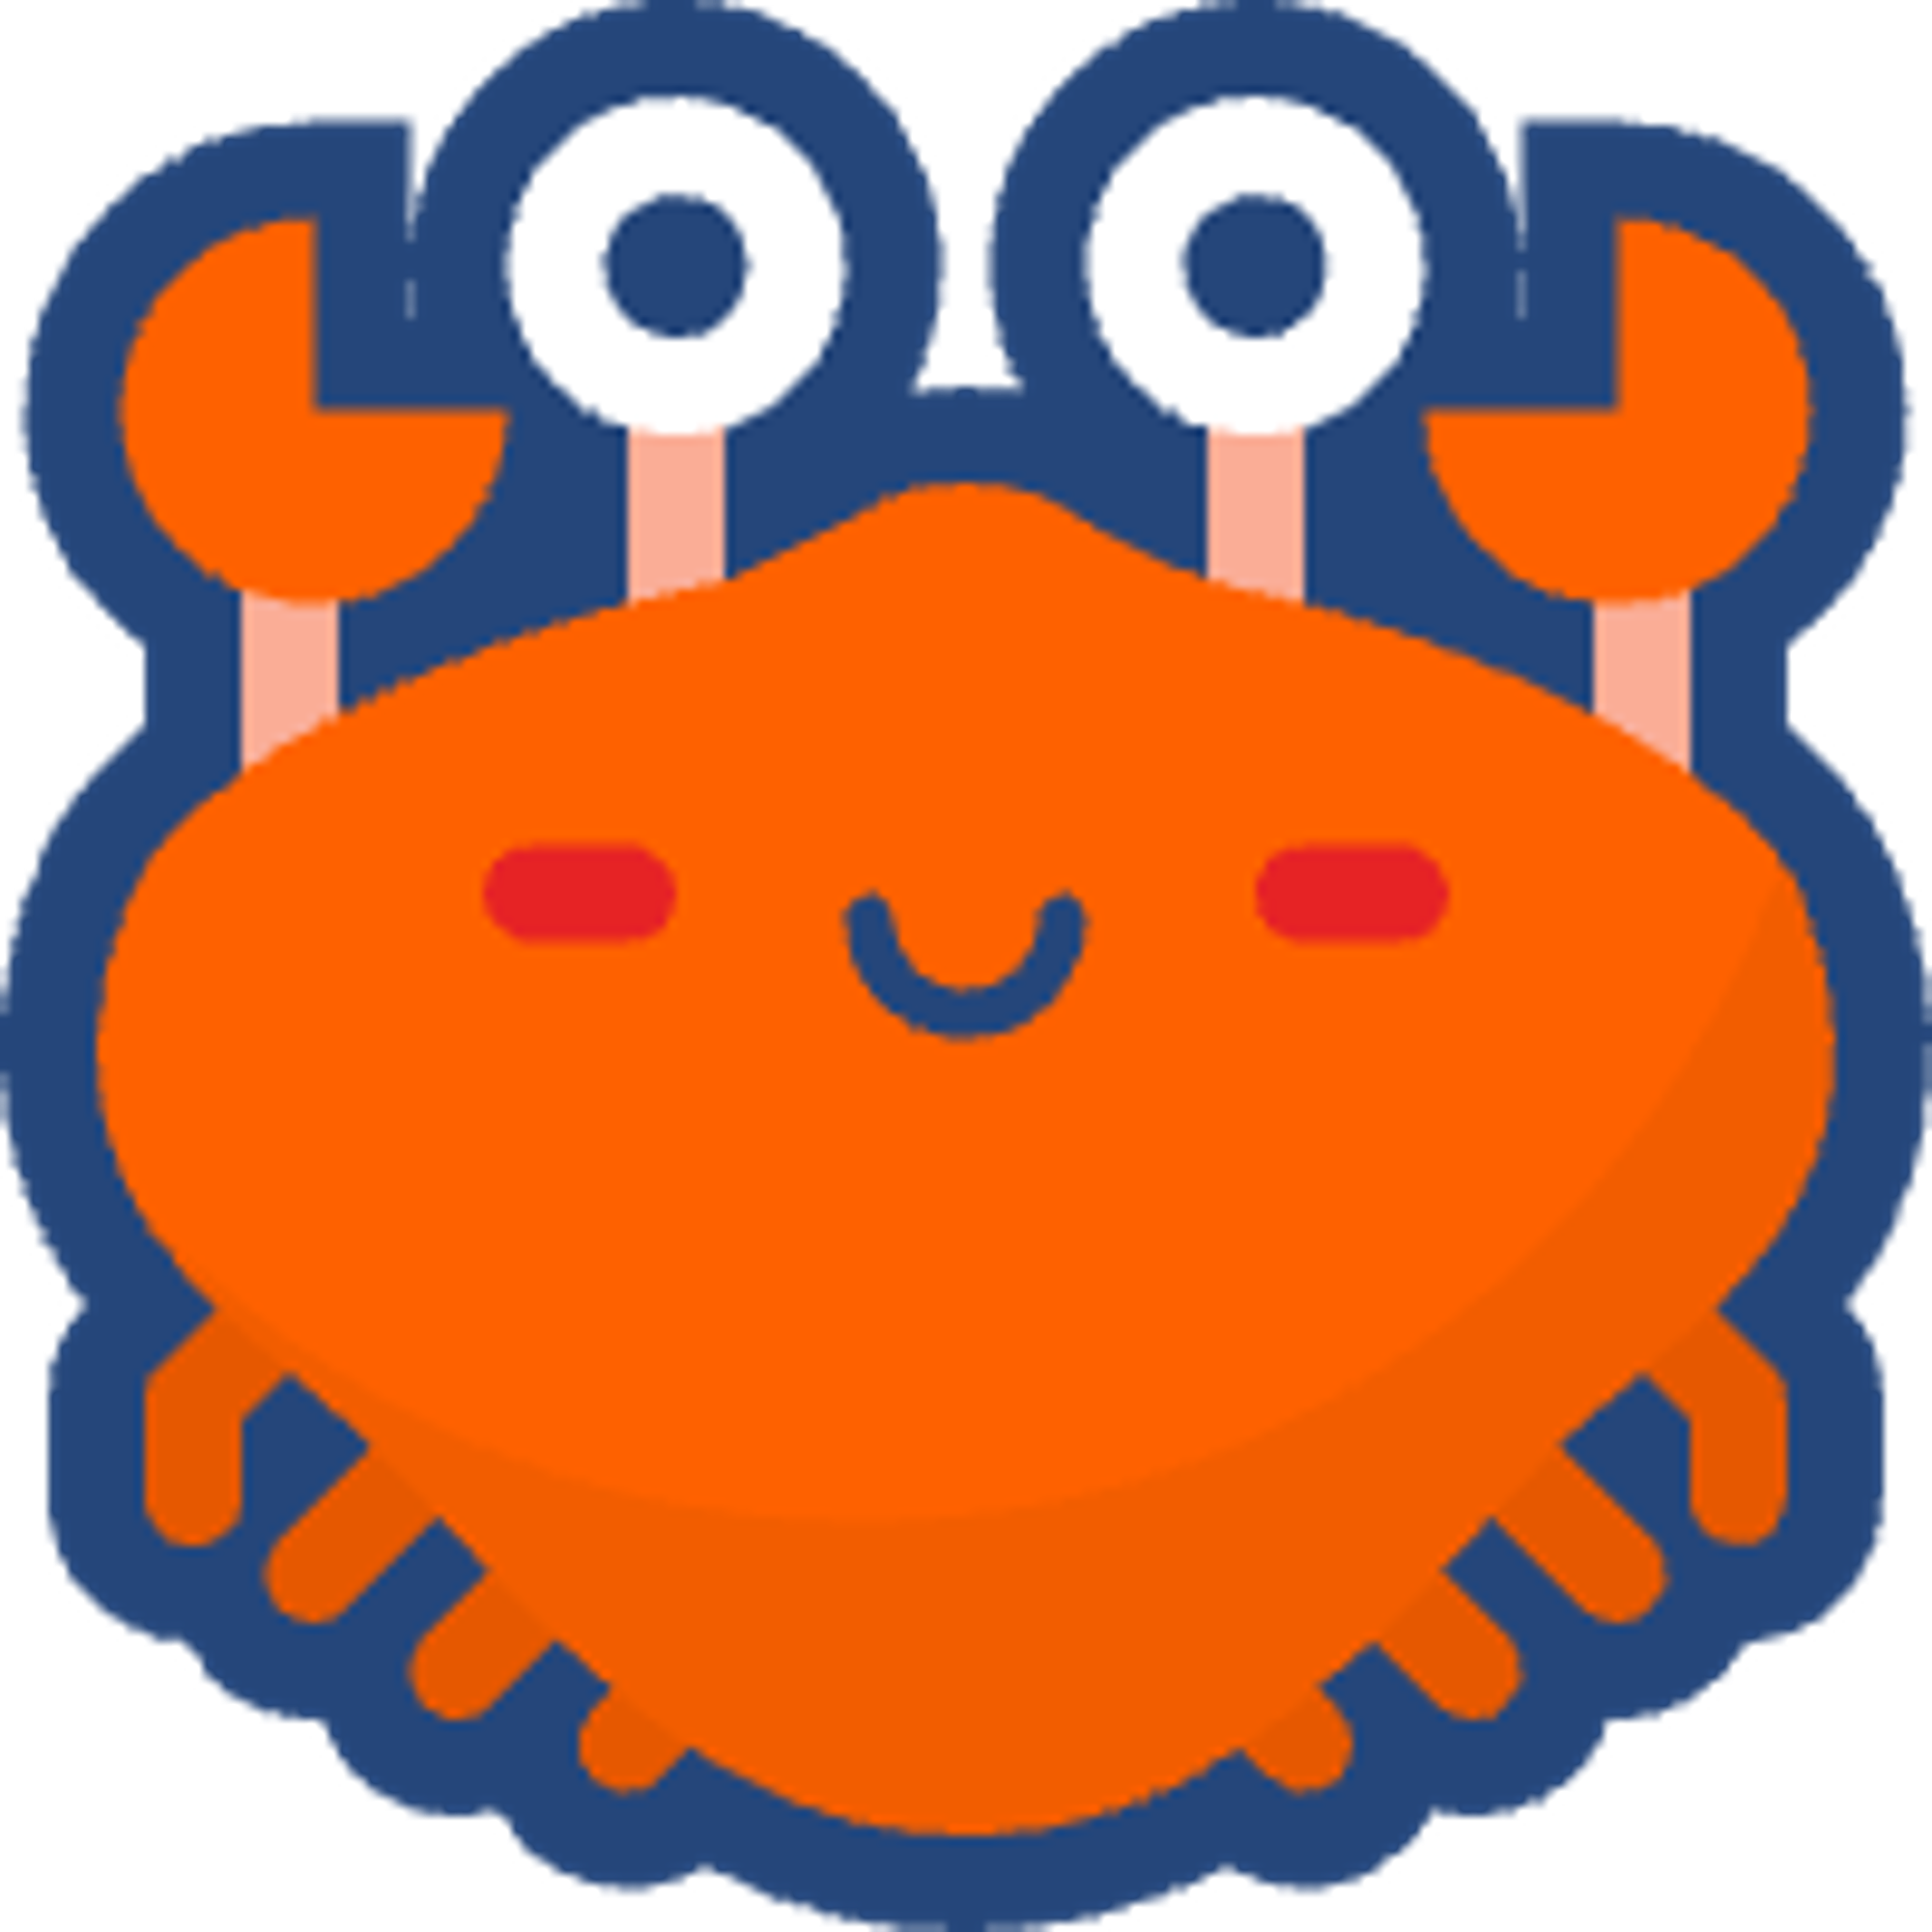 螃蟹